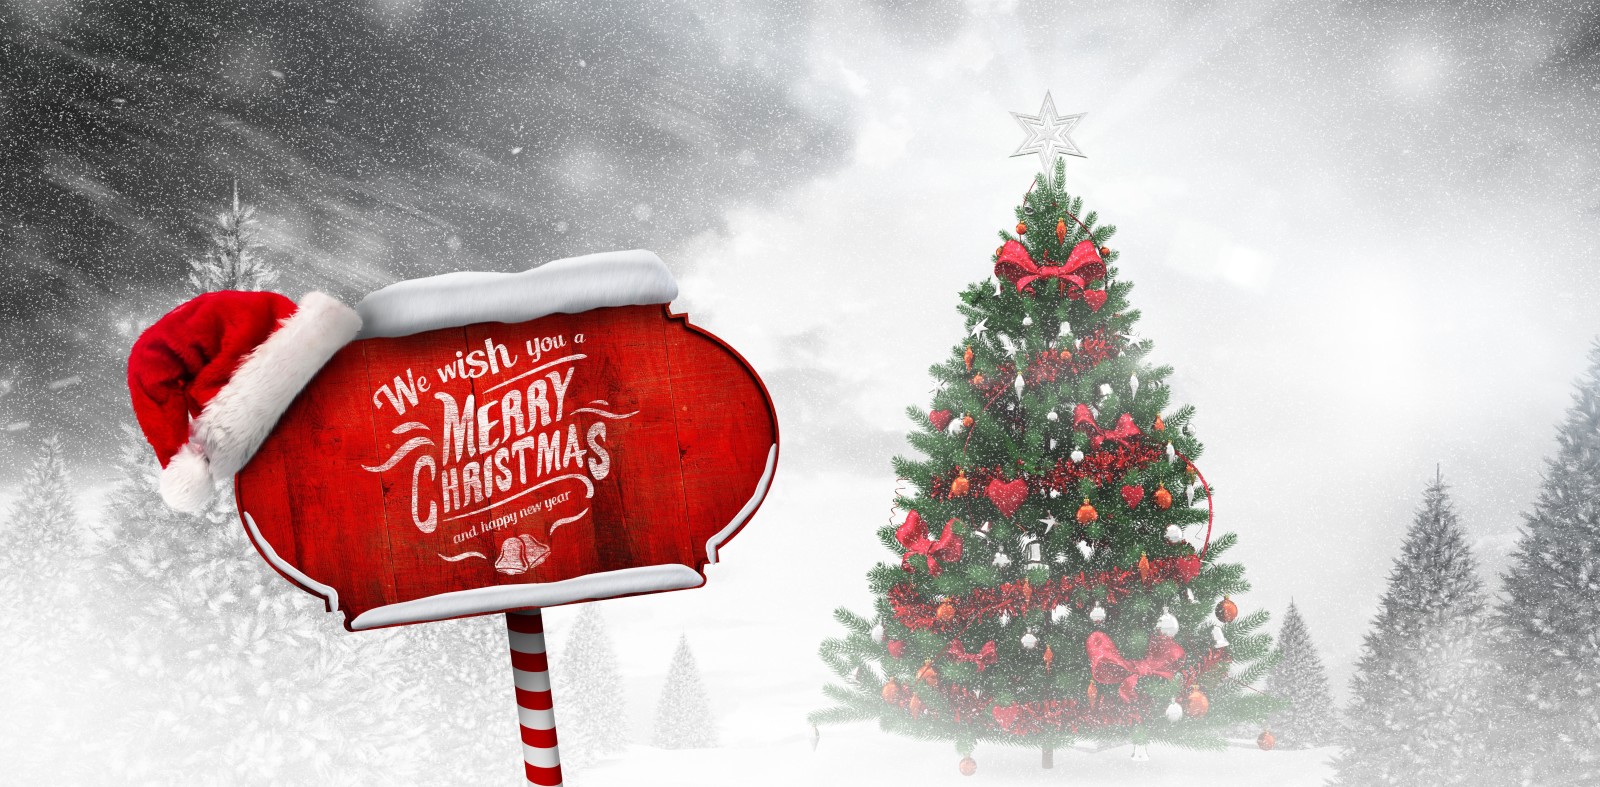 눈, 나무, 새해, 크리스마스, 장식, 명랑한, 겨울, 장난감